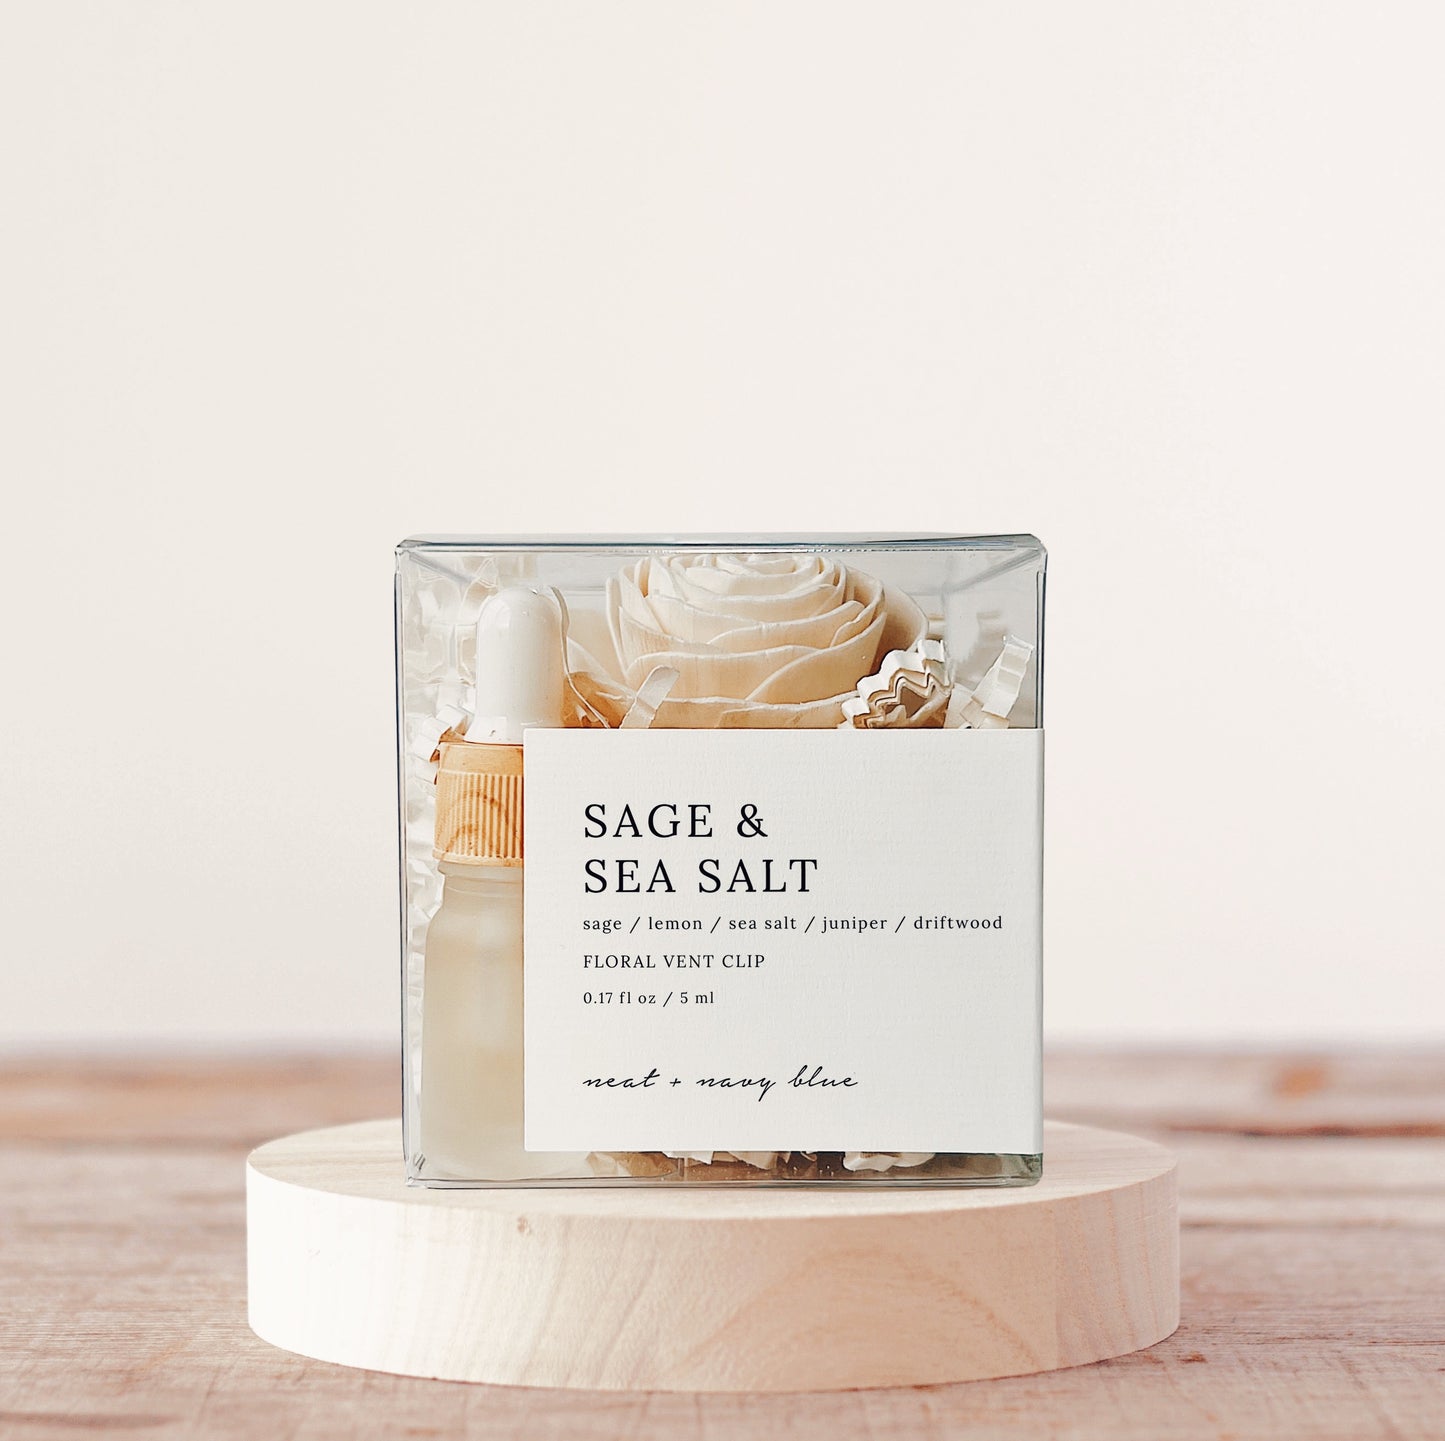 Sage & Sea Salt Floral Vent Clip